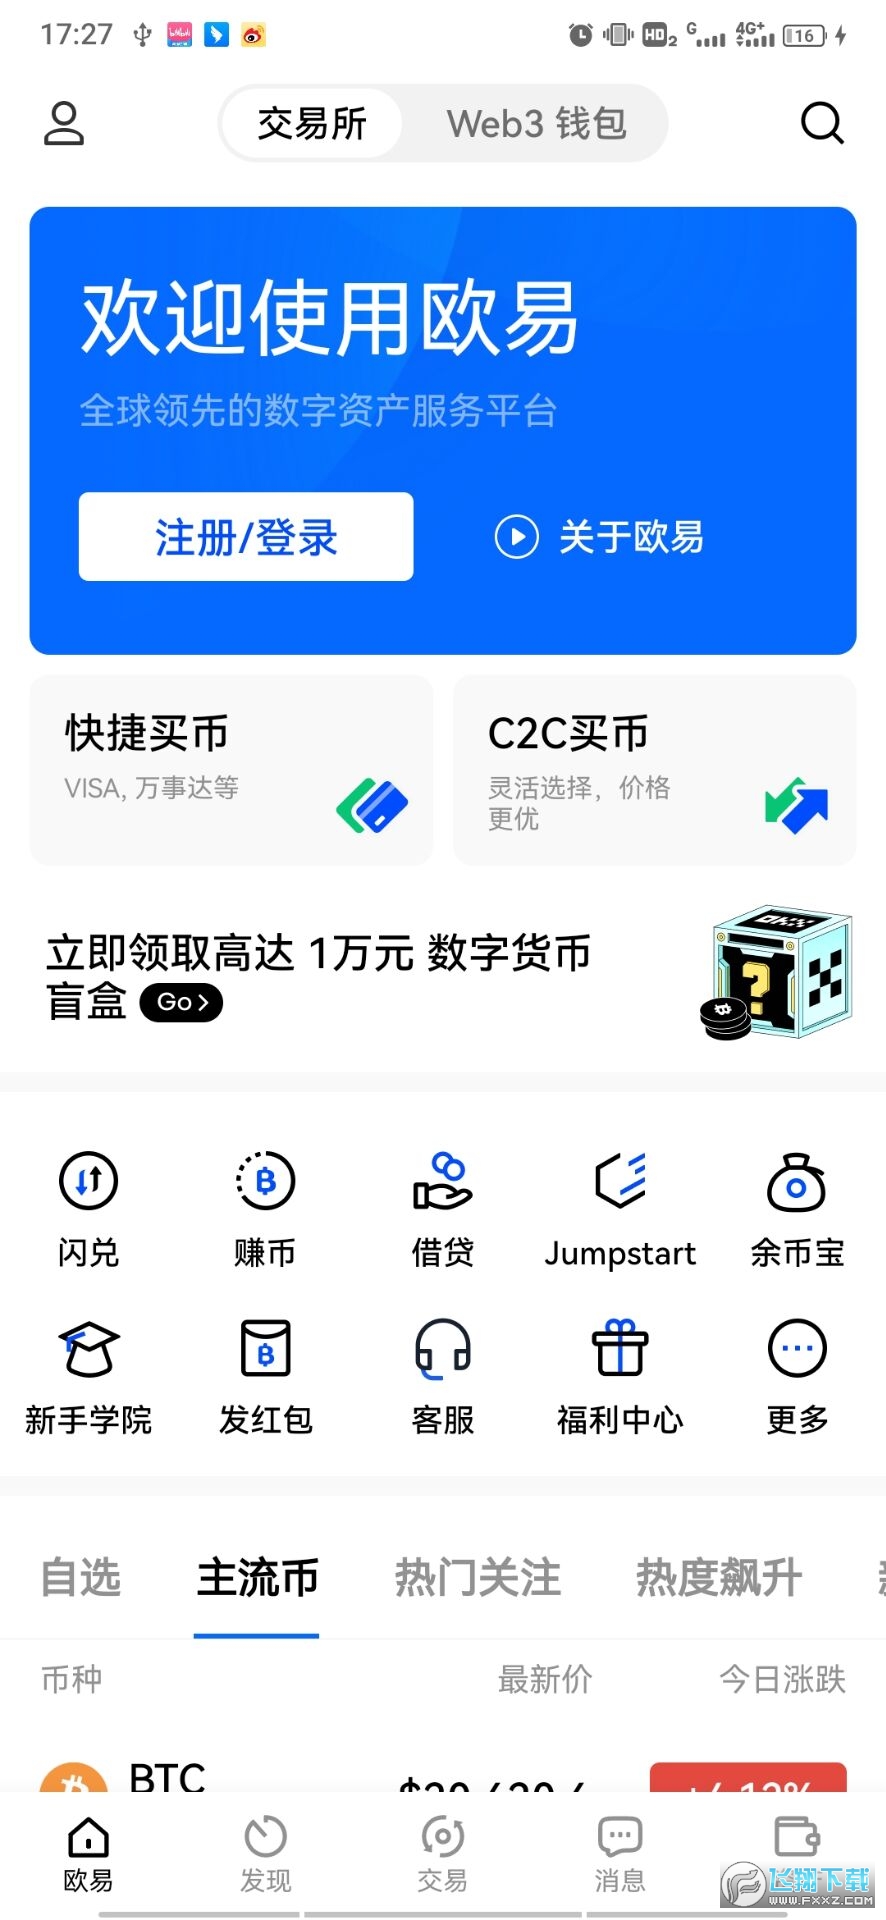 okex官网交易平台注册_okex官网交易平台app